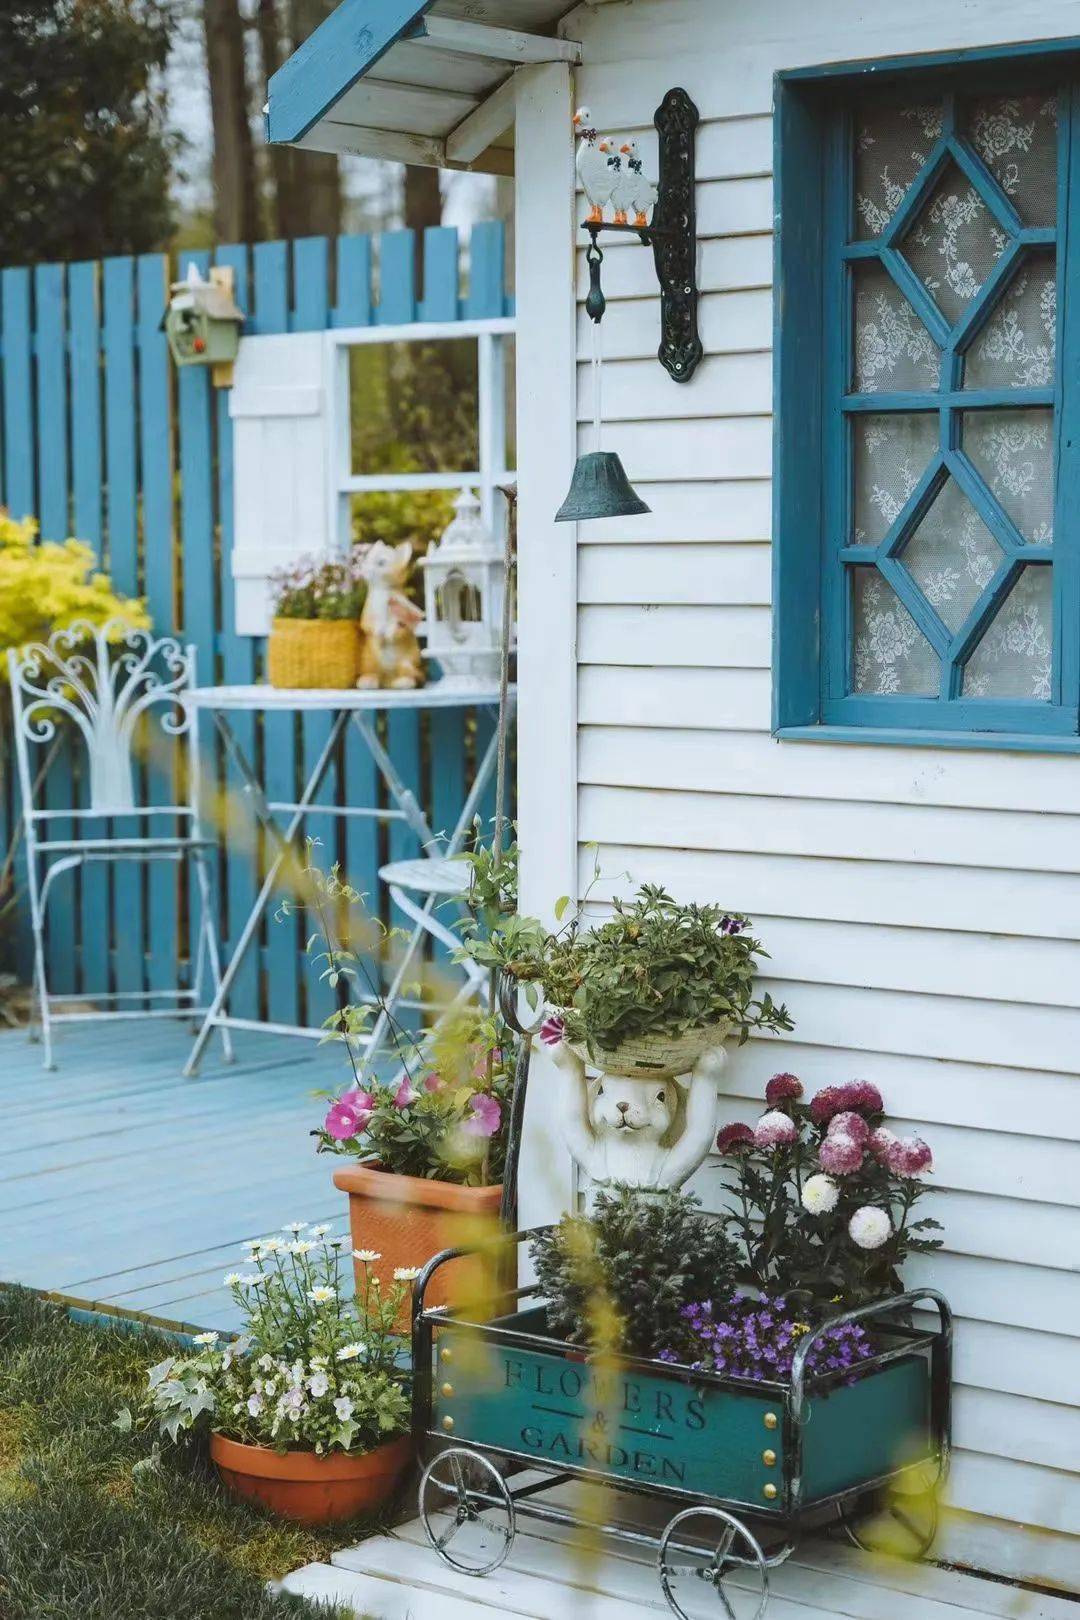 小花园的中间是一座蓝白色的小木屋,小屋的四周用各式各样的草花点缀